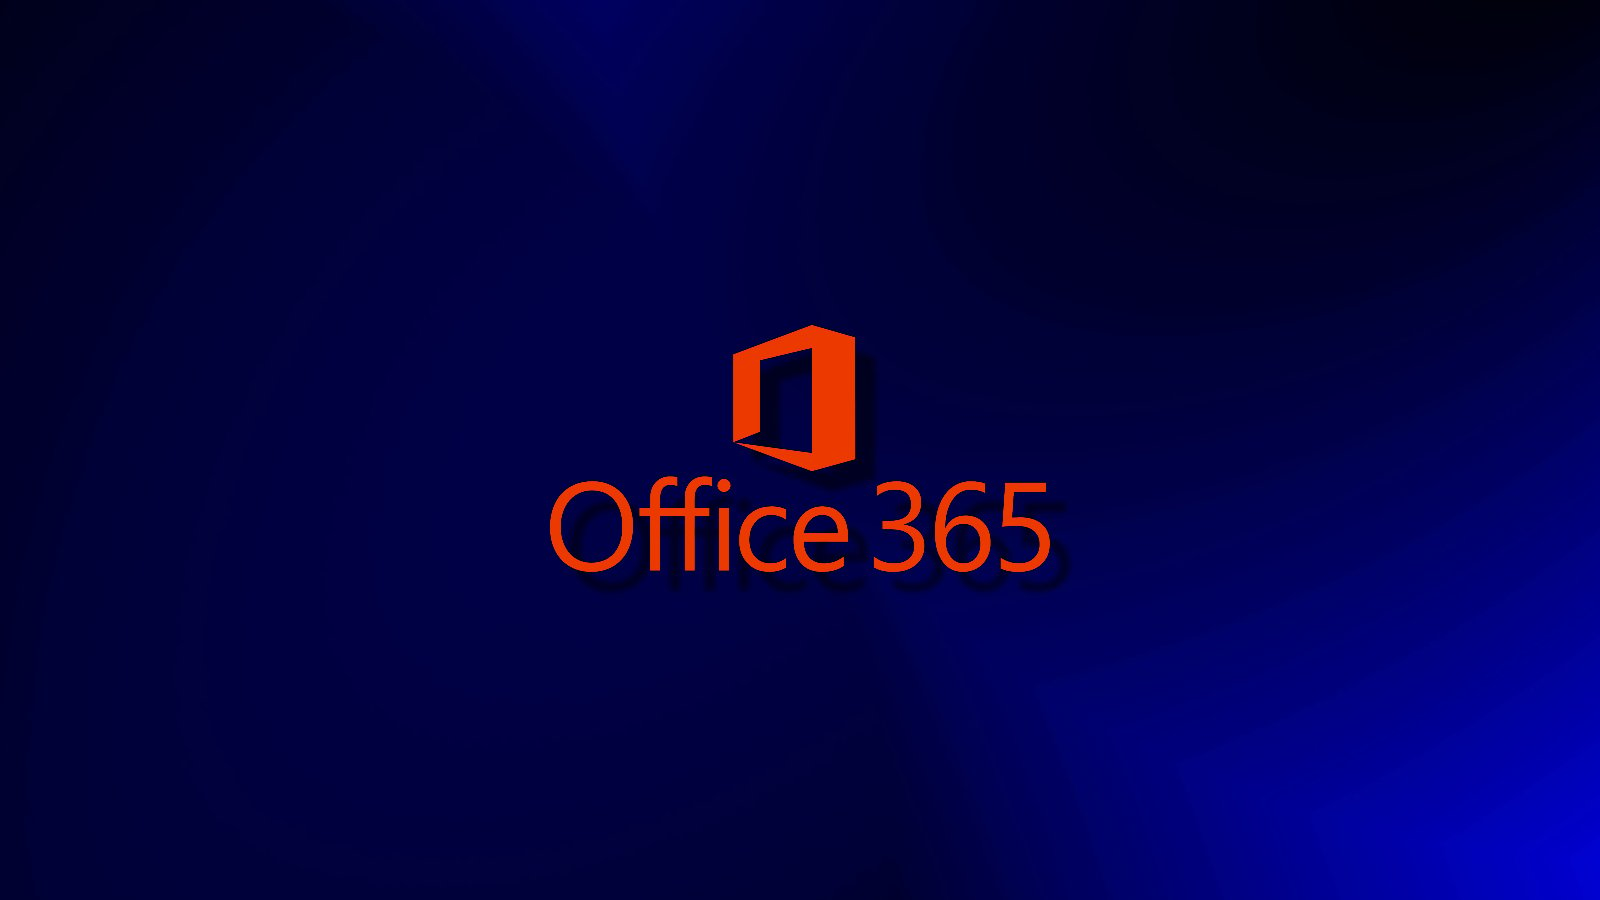 El cifrado de correo electrónico de Microsoft Office 365 podría exponer el contenido del mensaje